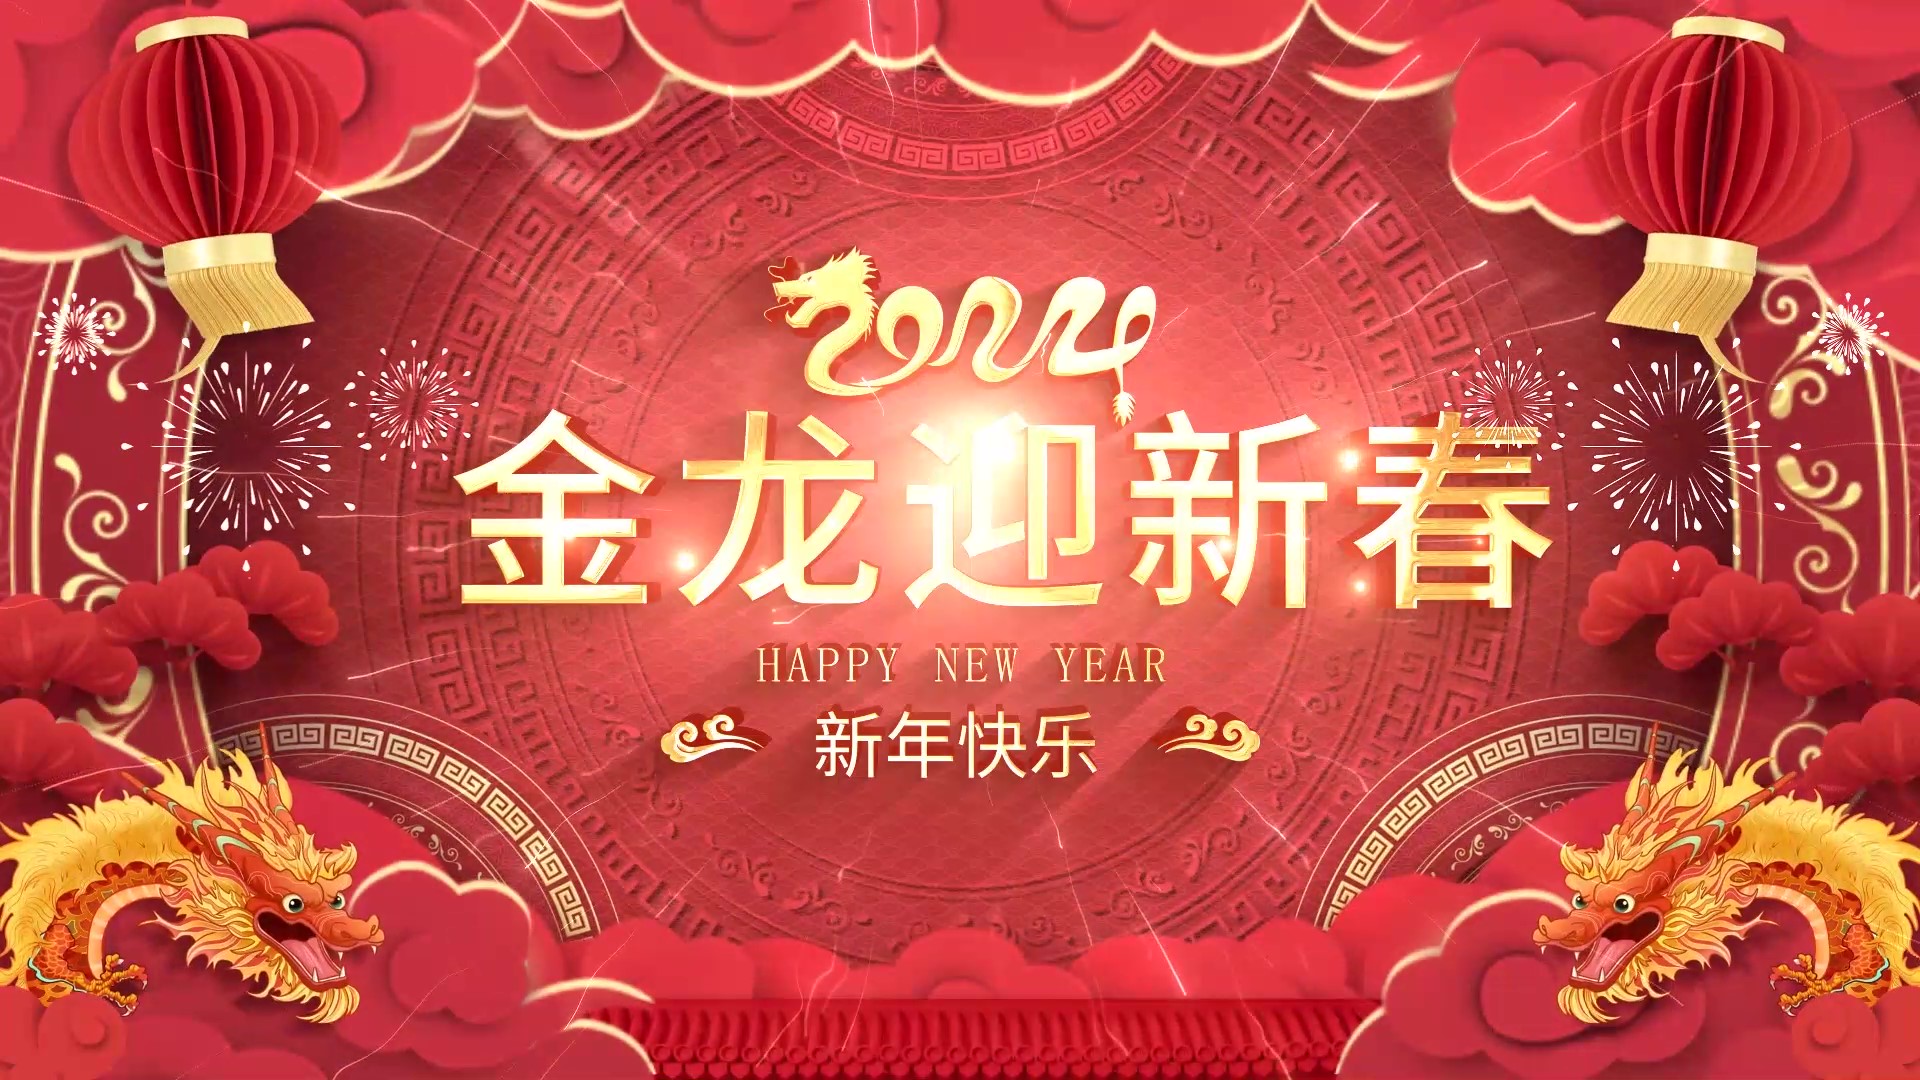 百超中国区总裁游松博士恭祝大家新年快乐